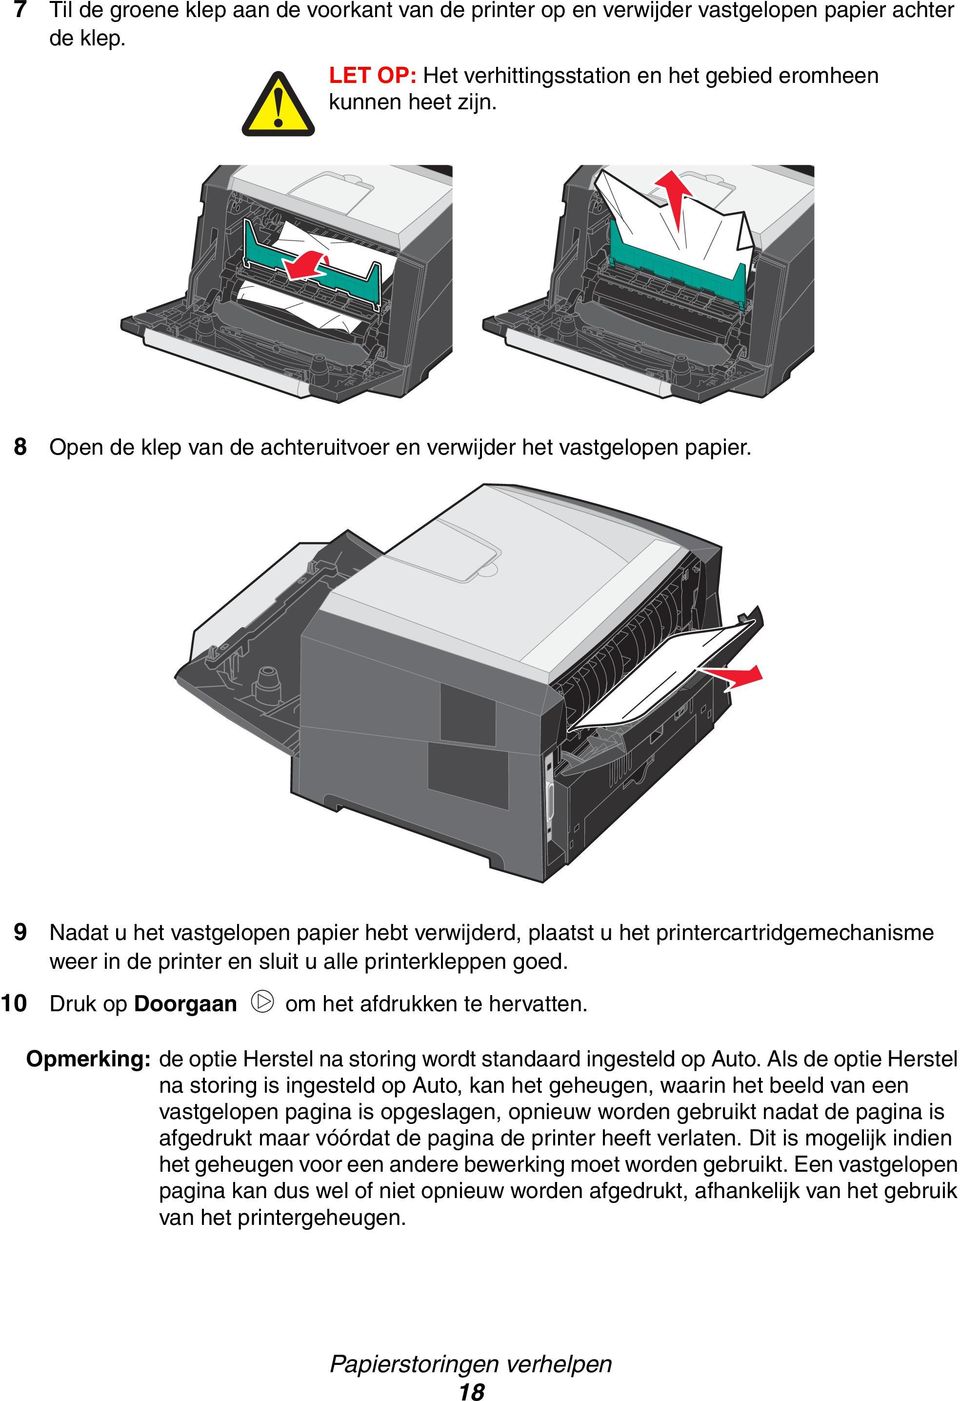 9 Nadat u het vastgelopen papier hebt verwijderd, plaatst u het printercartridgemechanisme weer in de printer en sluit u alle printerkleppen goed. 10 Druk op Doorgaan om het afdrukken te hervatten.